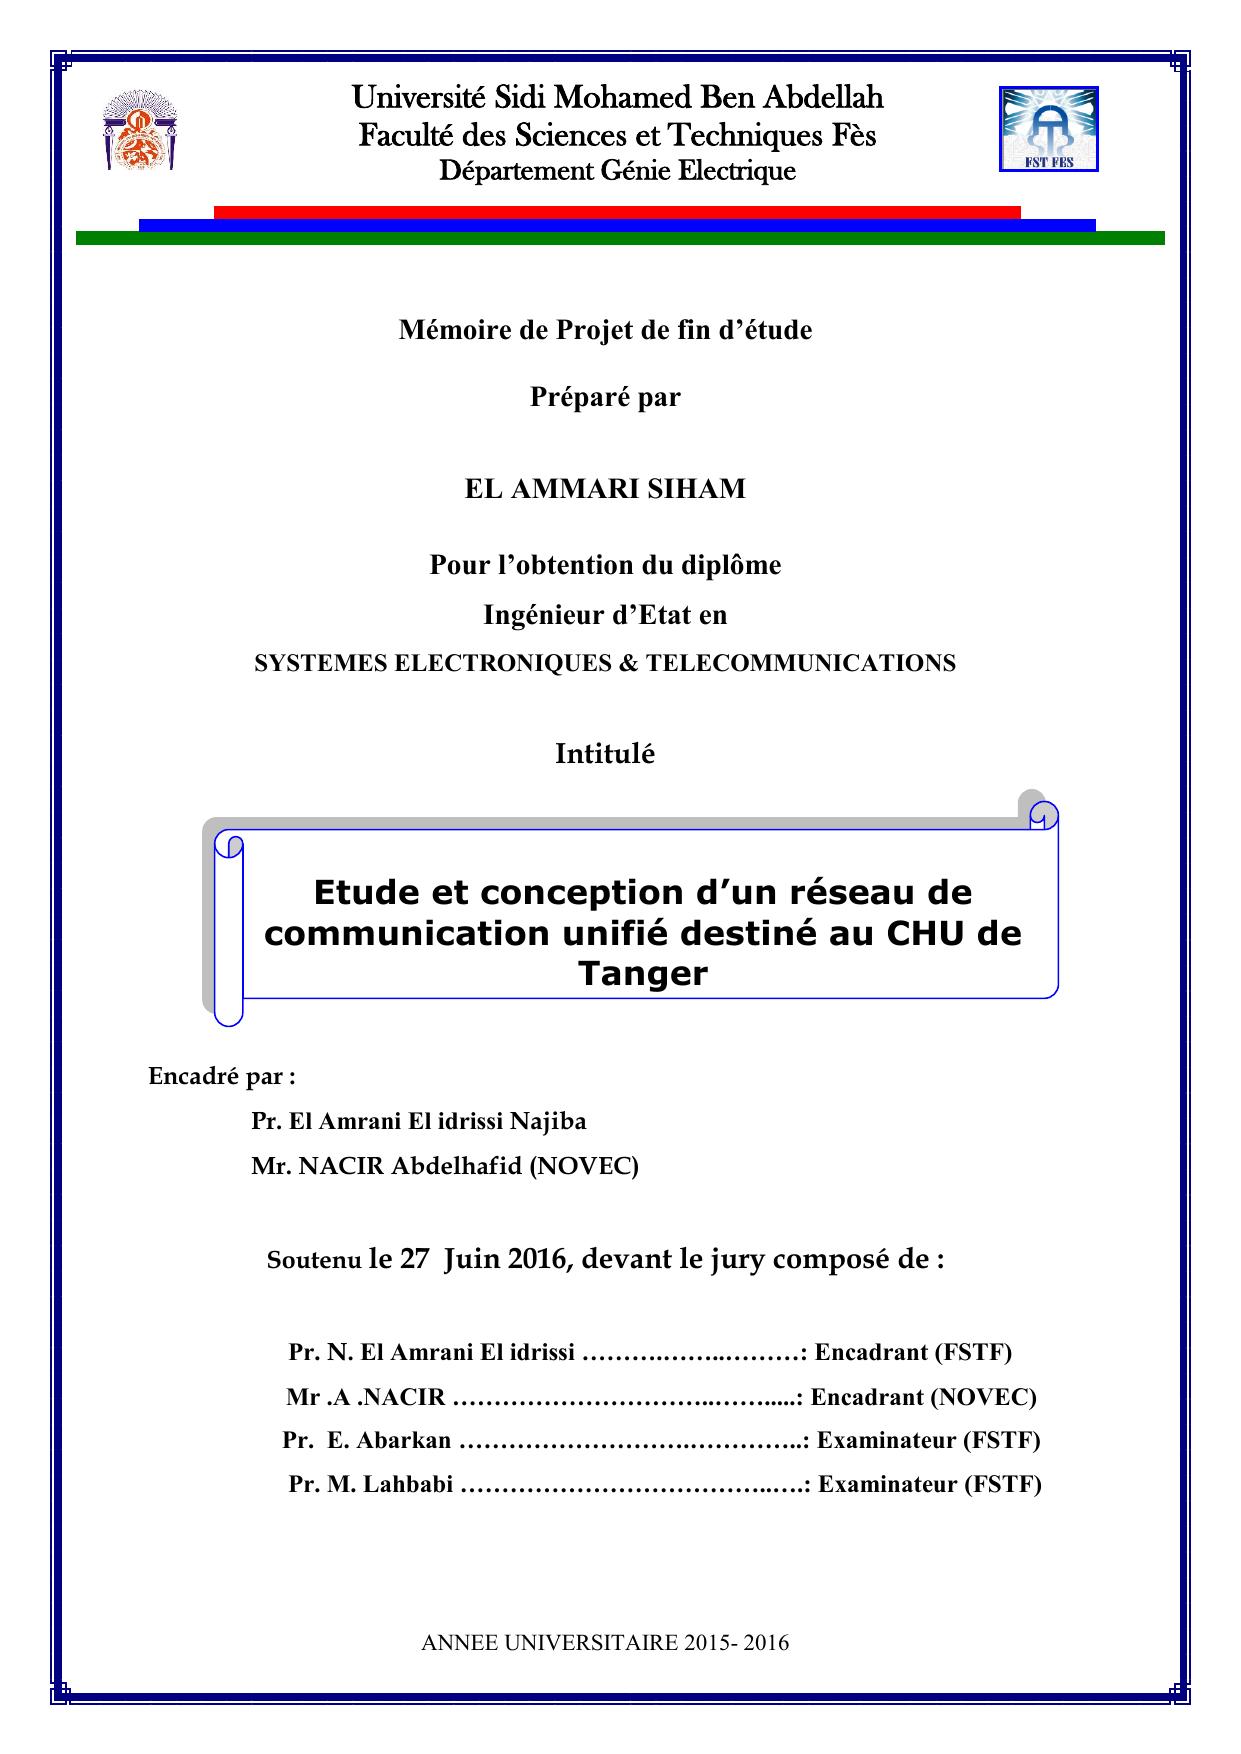 Etude et conception d’un réseau de communication unifié destiné au CHU de Tanger